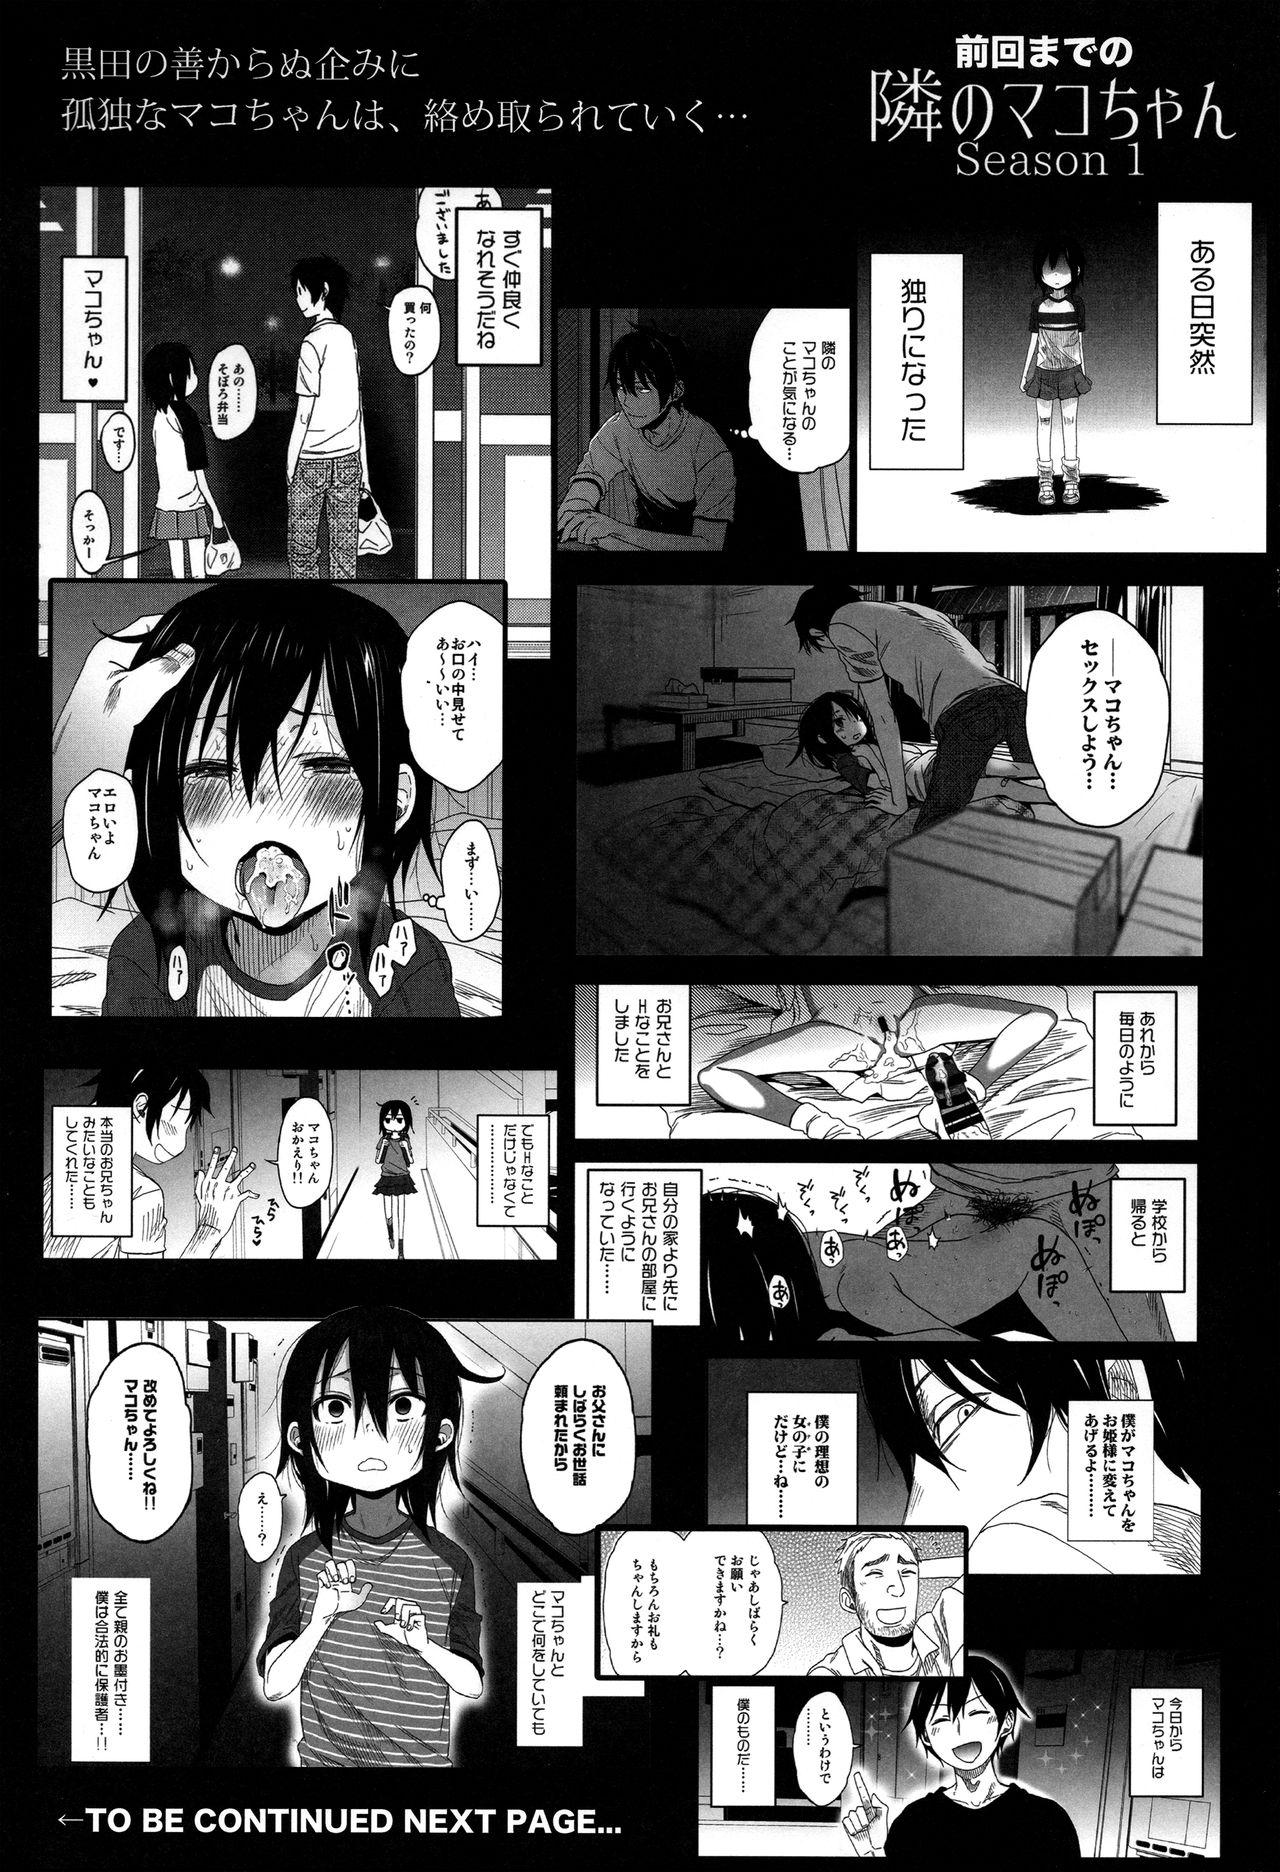 Jerkoff Tonari no Mako-chan Season 2 Vol. 1 - Original Mistress - Page 3